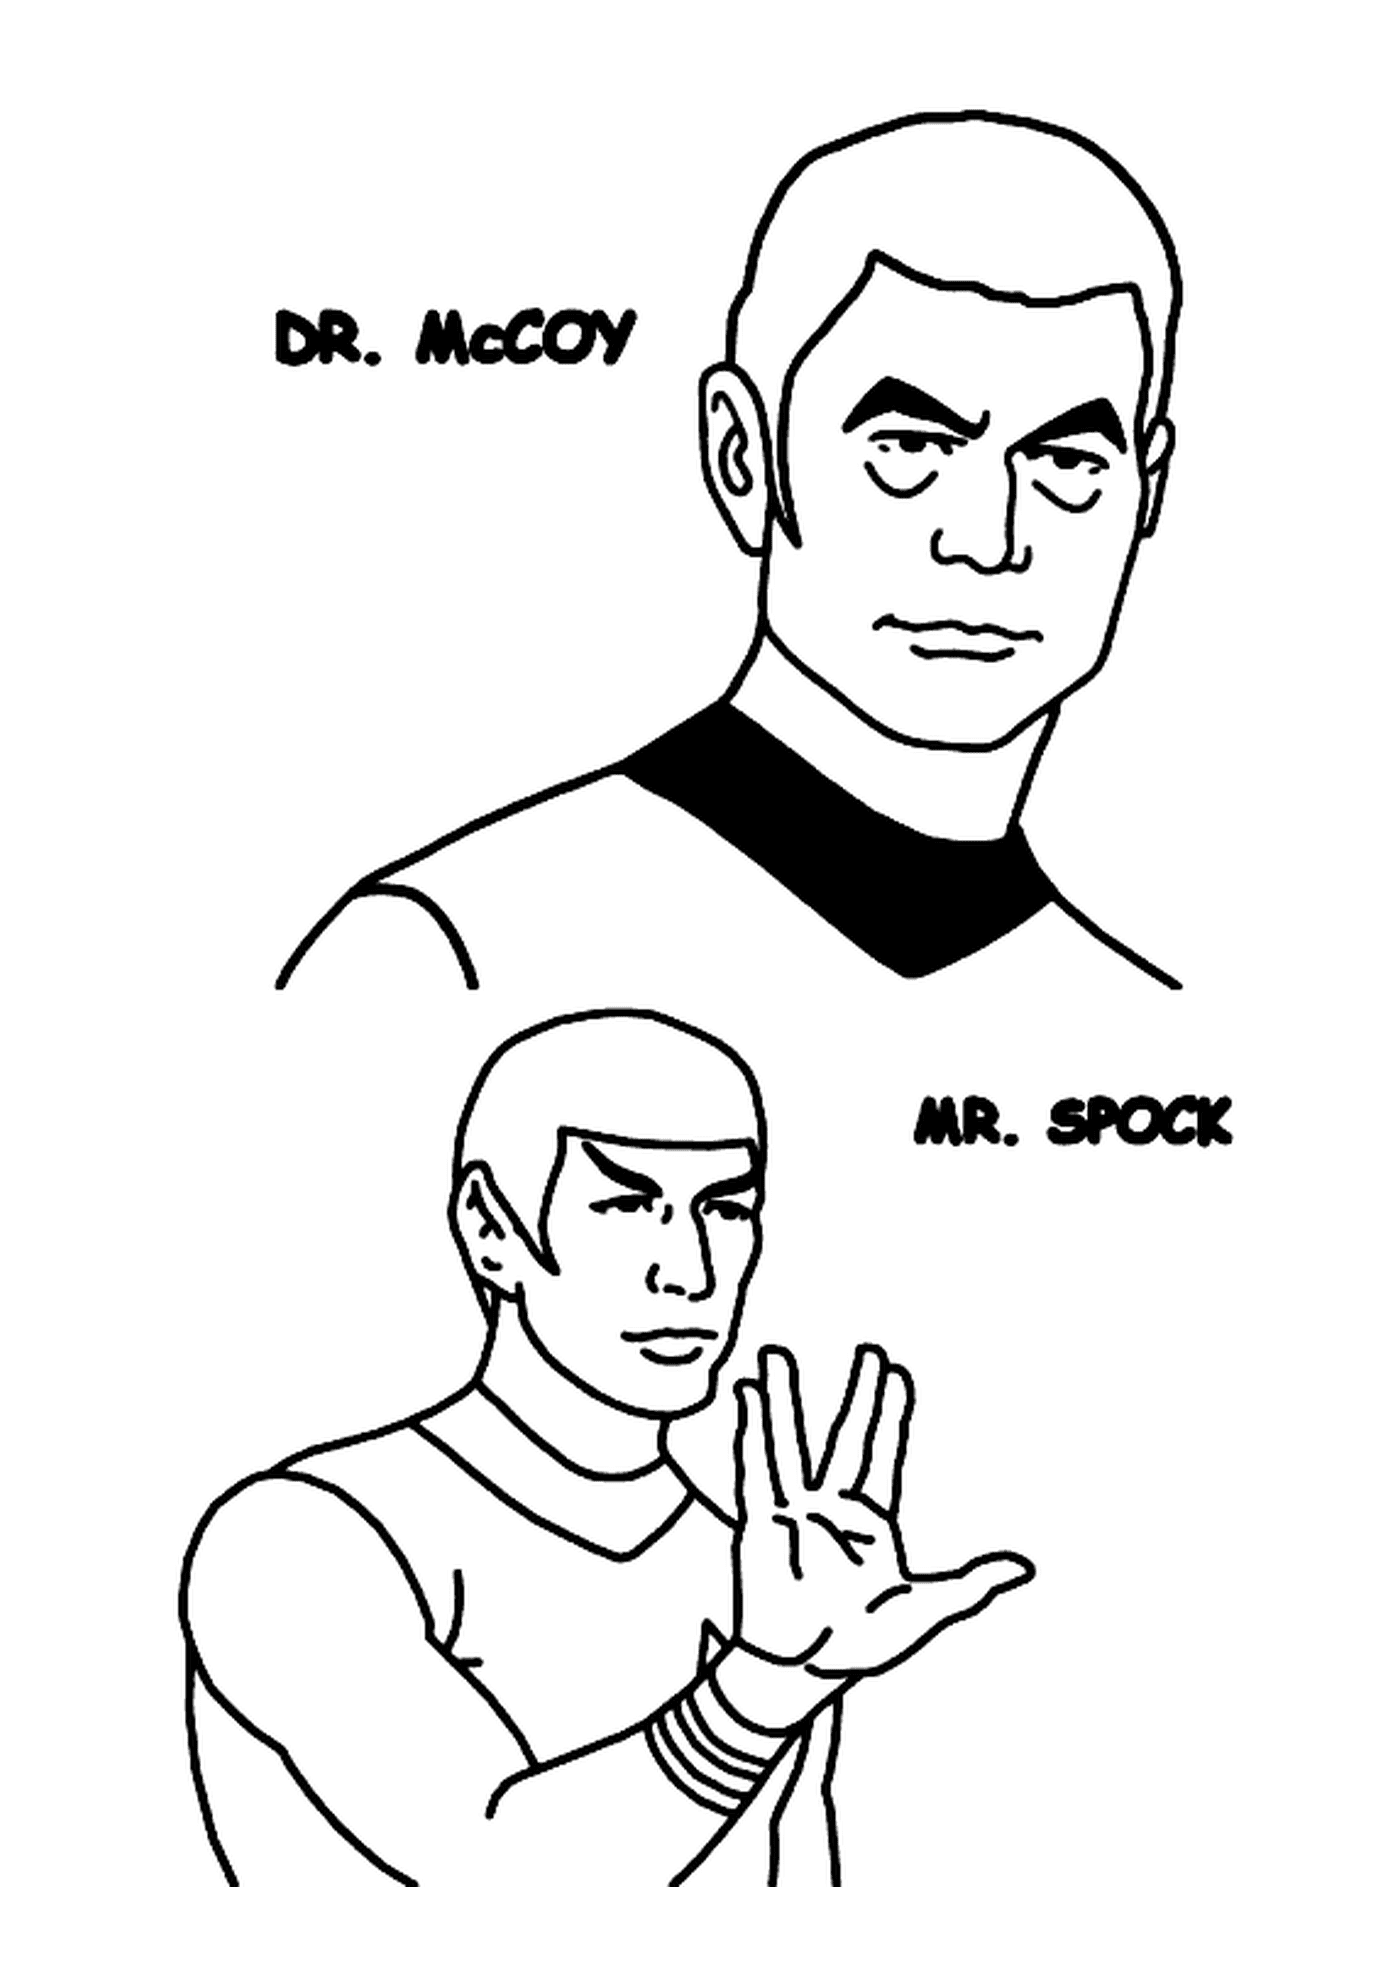  Dr. McCoy und Herr Spock de Star Trek 